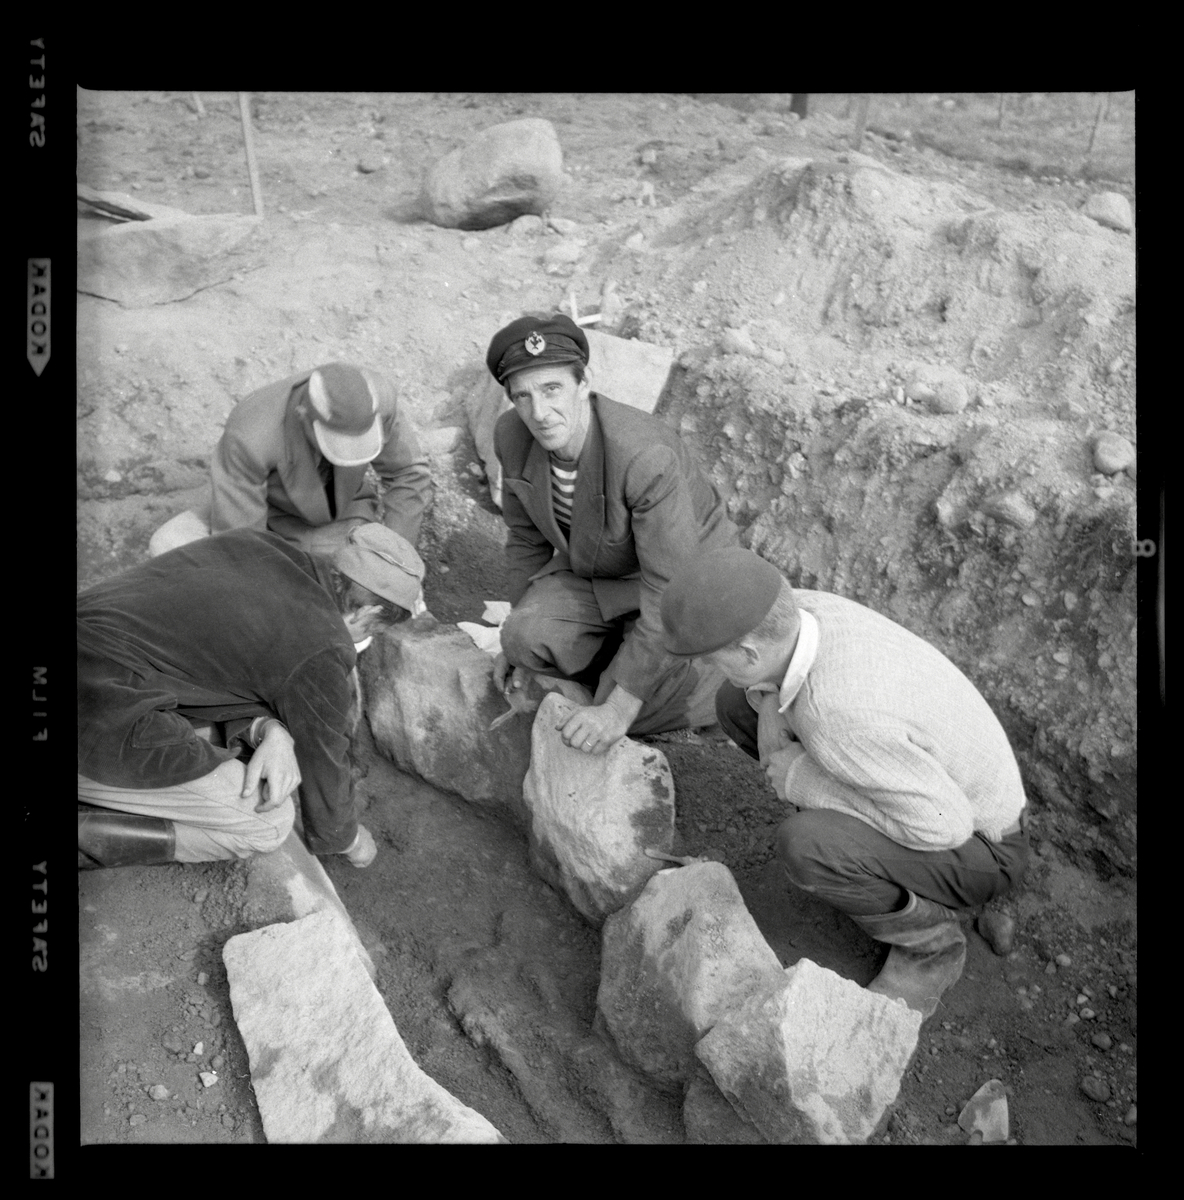 Svedvi sn Rallsta RAÄ 16 Arkeologisk undersökning utförd av Vlm / Henry Simonsson 1960-61.

Män från utgrävningen av stenkistan, anläggning 86.